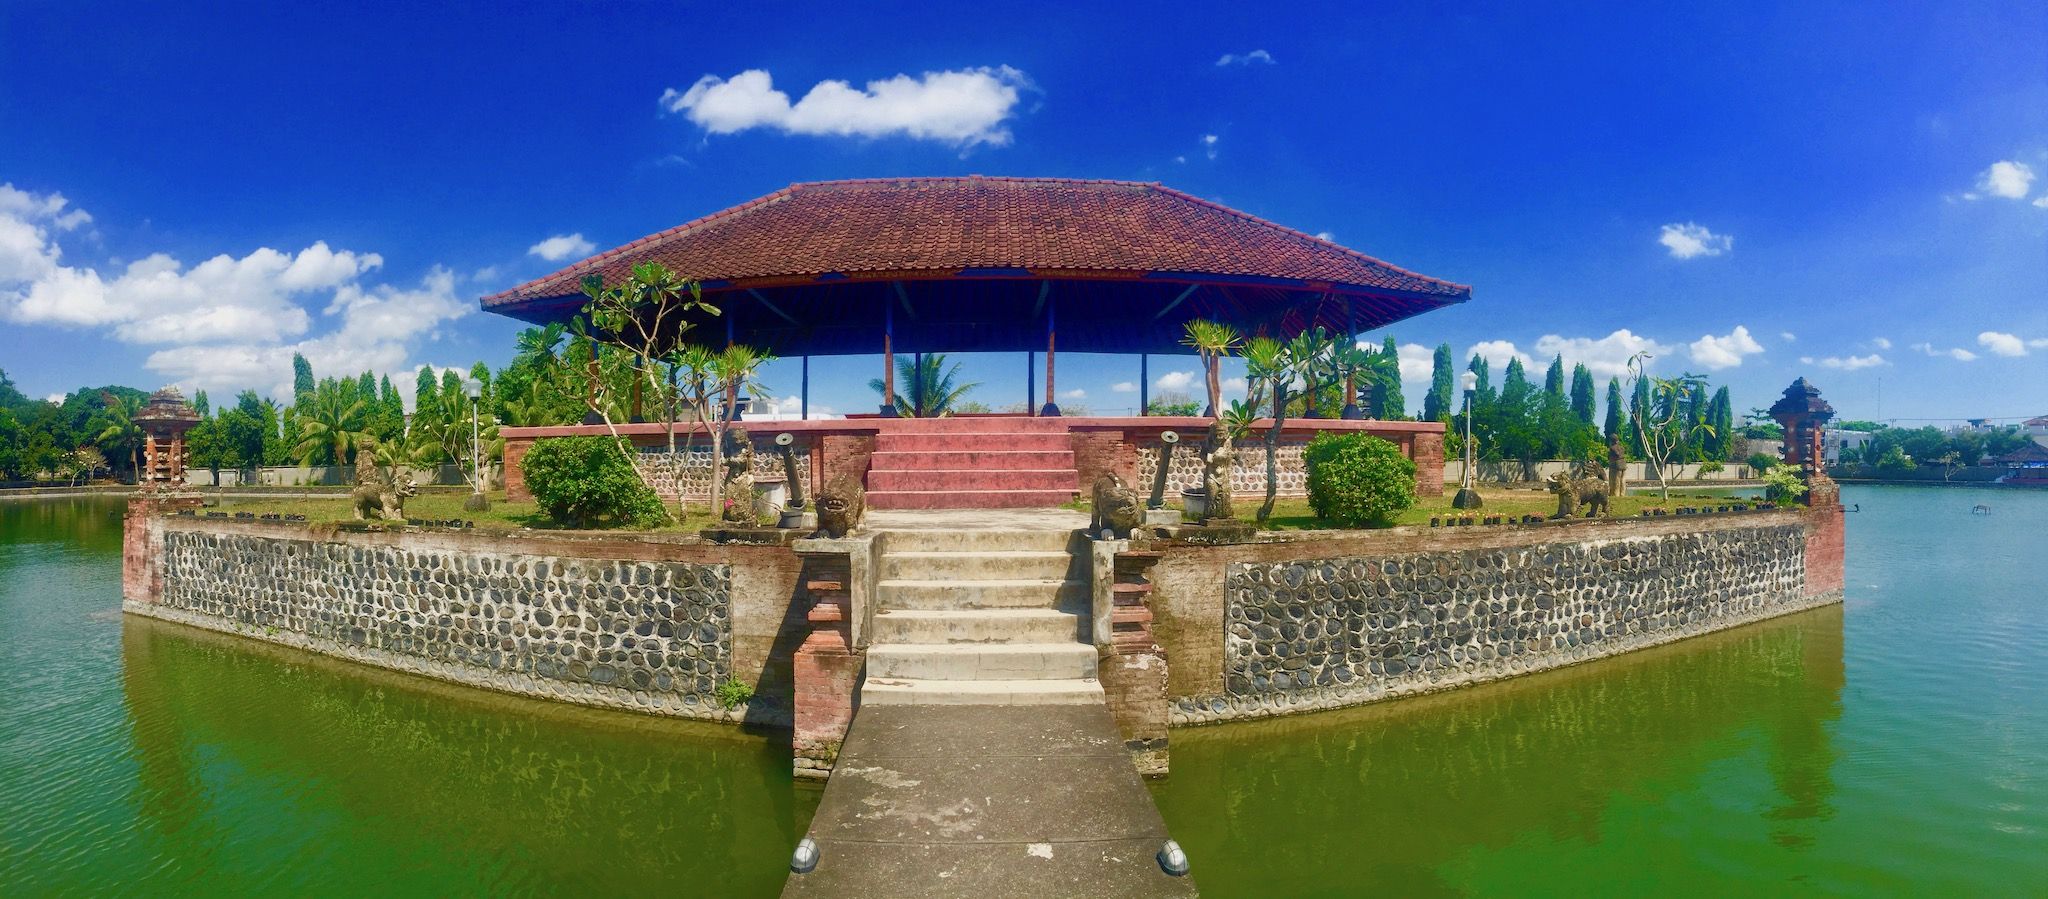 Conseils pour un voyage en Indonésie – L’État insulaire attire avec des lieux paradisiaques